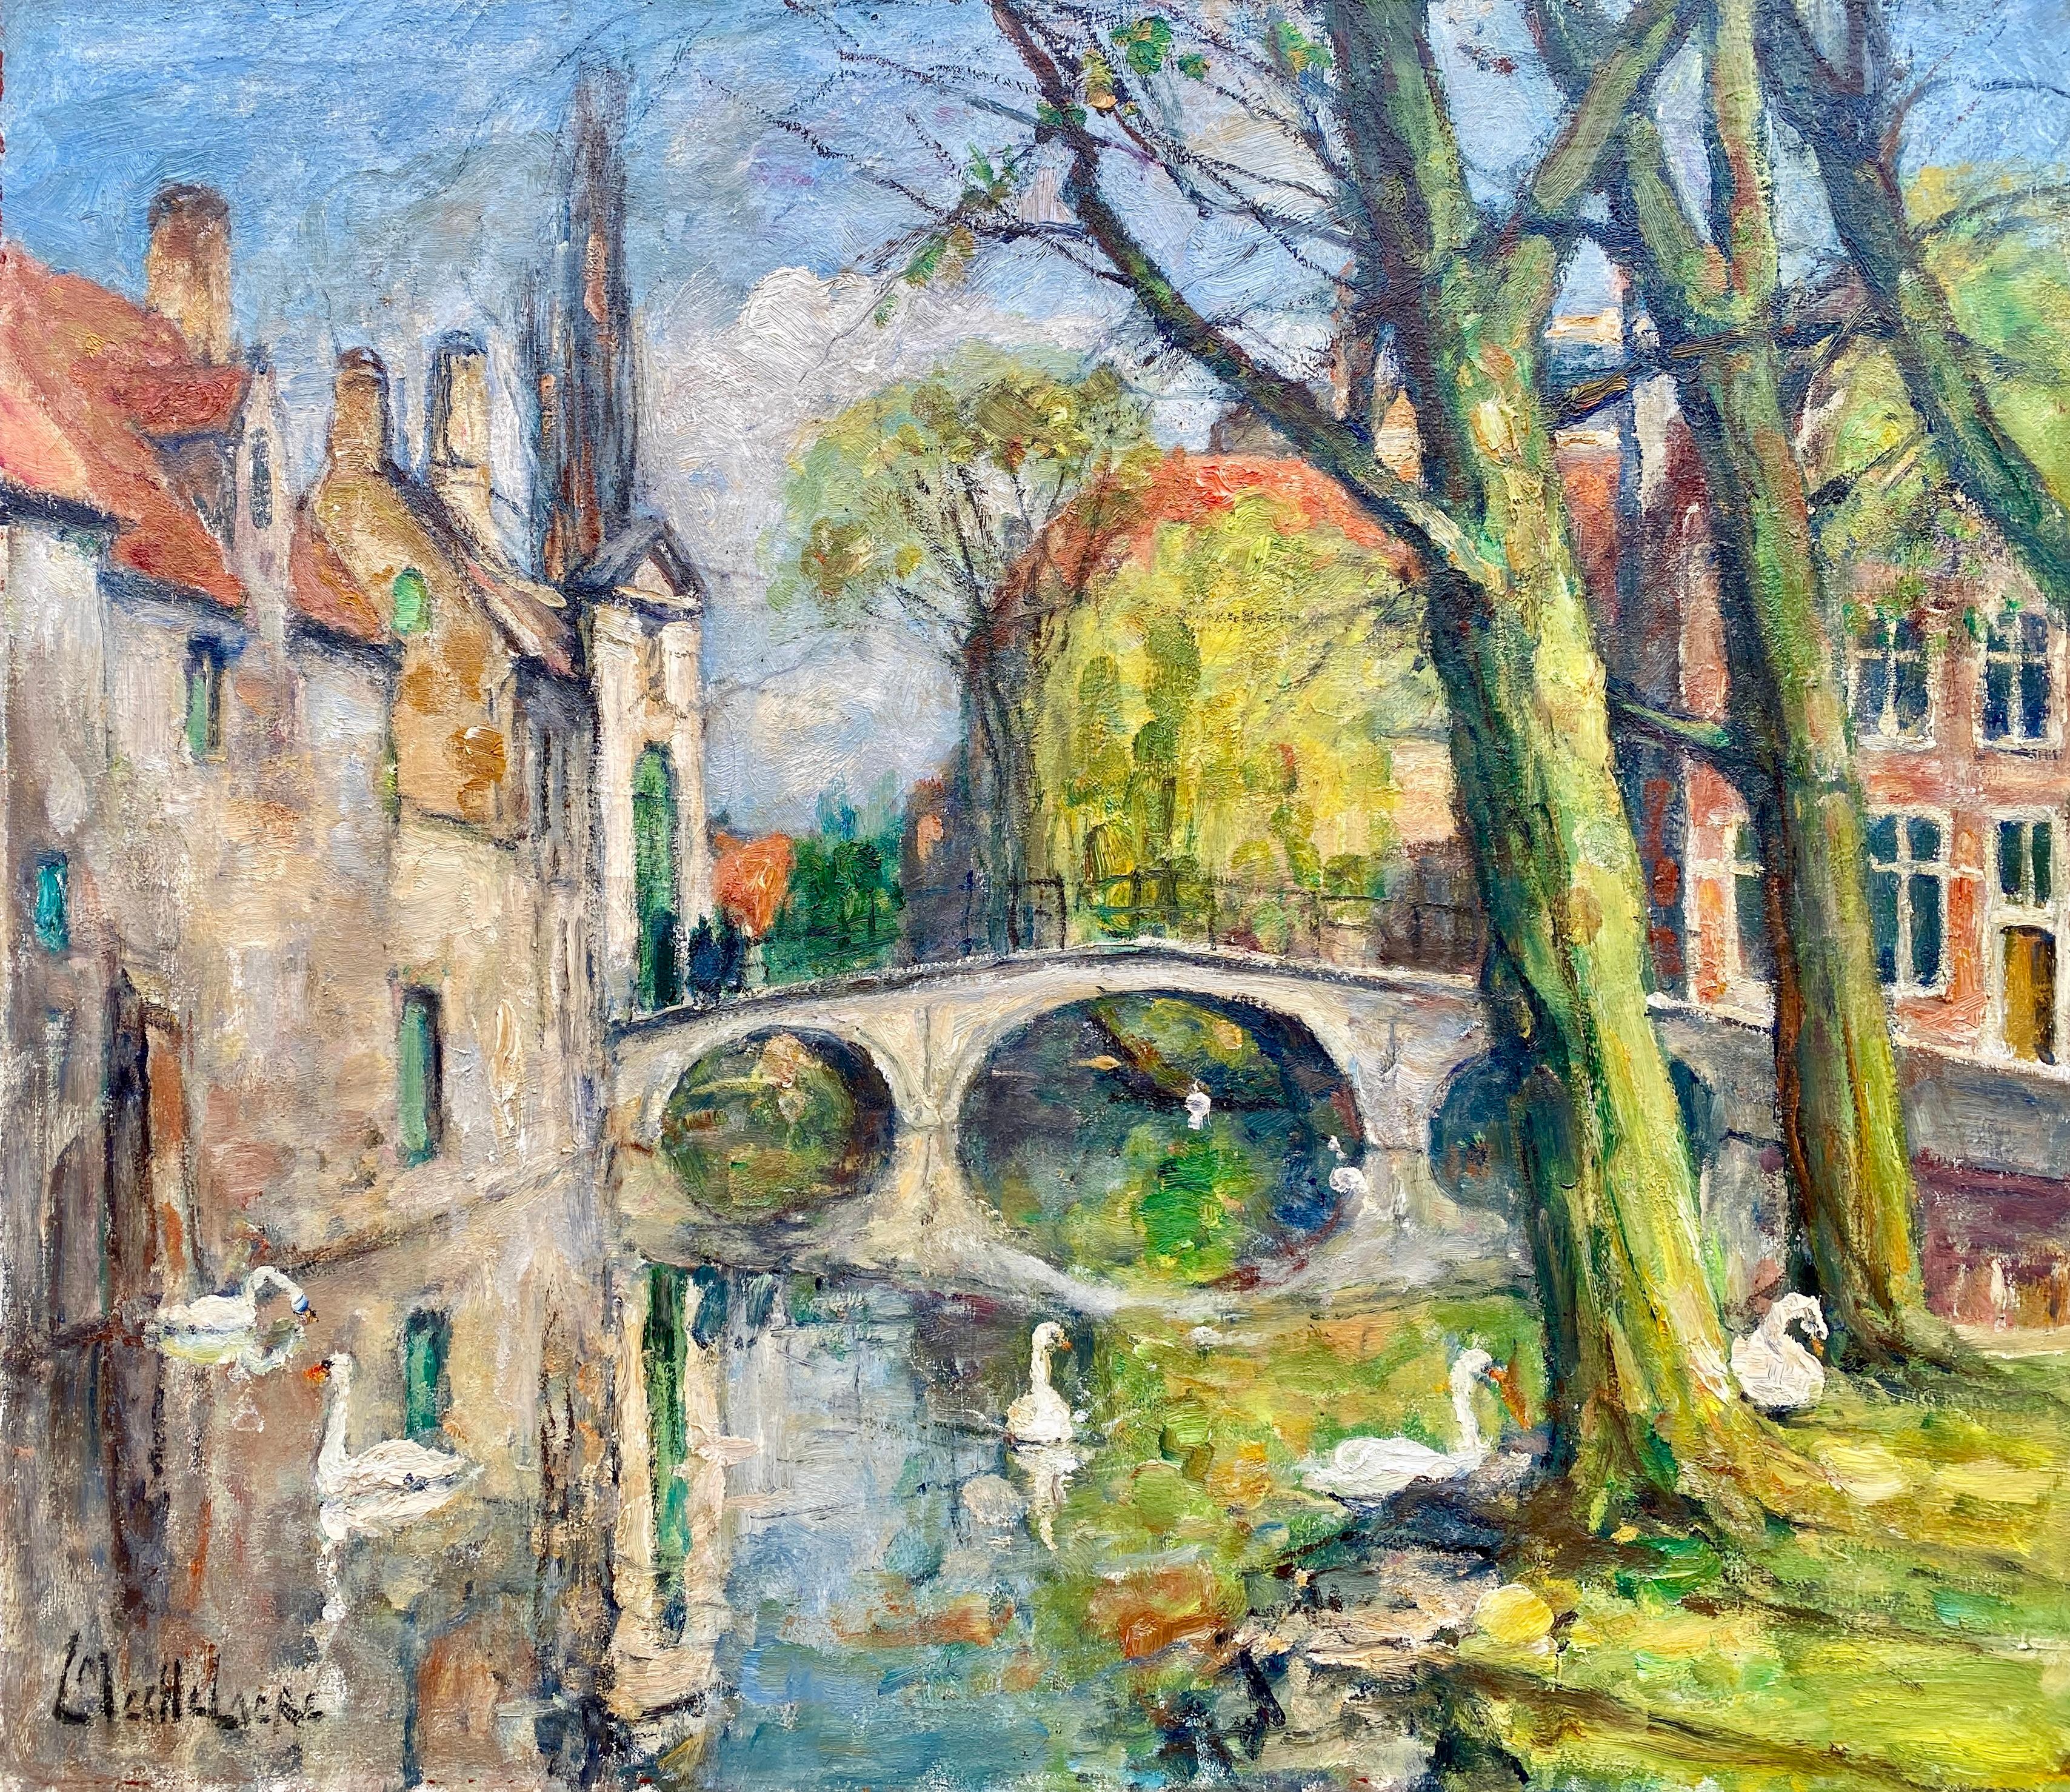 Swans of Bruges - Beguinage Bridge' Leo Mechelaere, Bruges 1880 - 1964 Erlangen